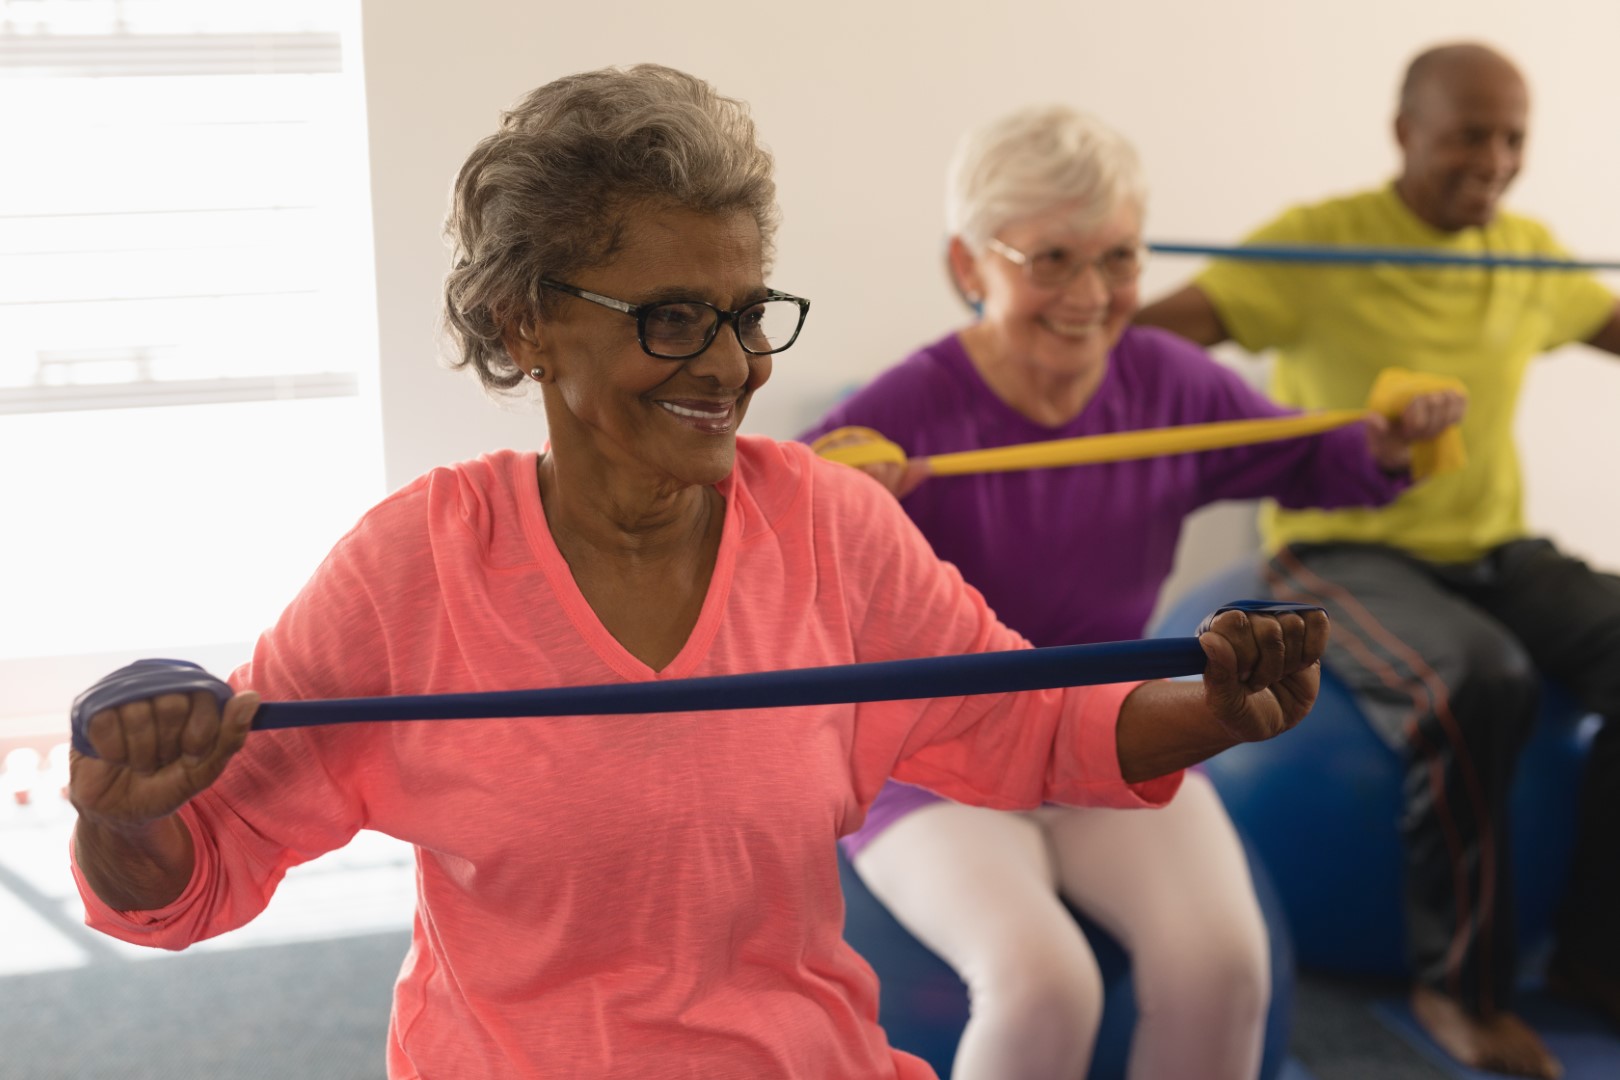 Exercise Tips for Seniors